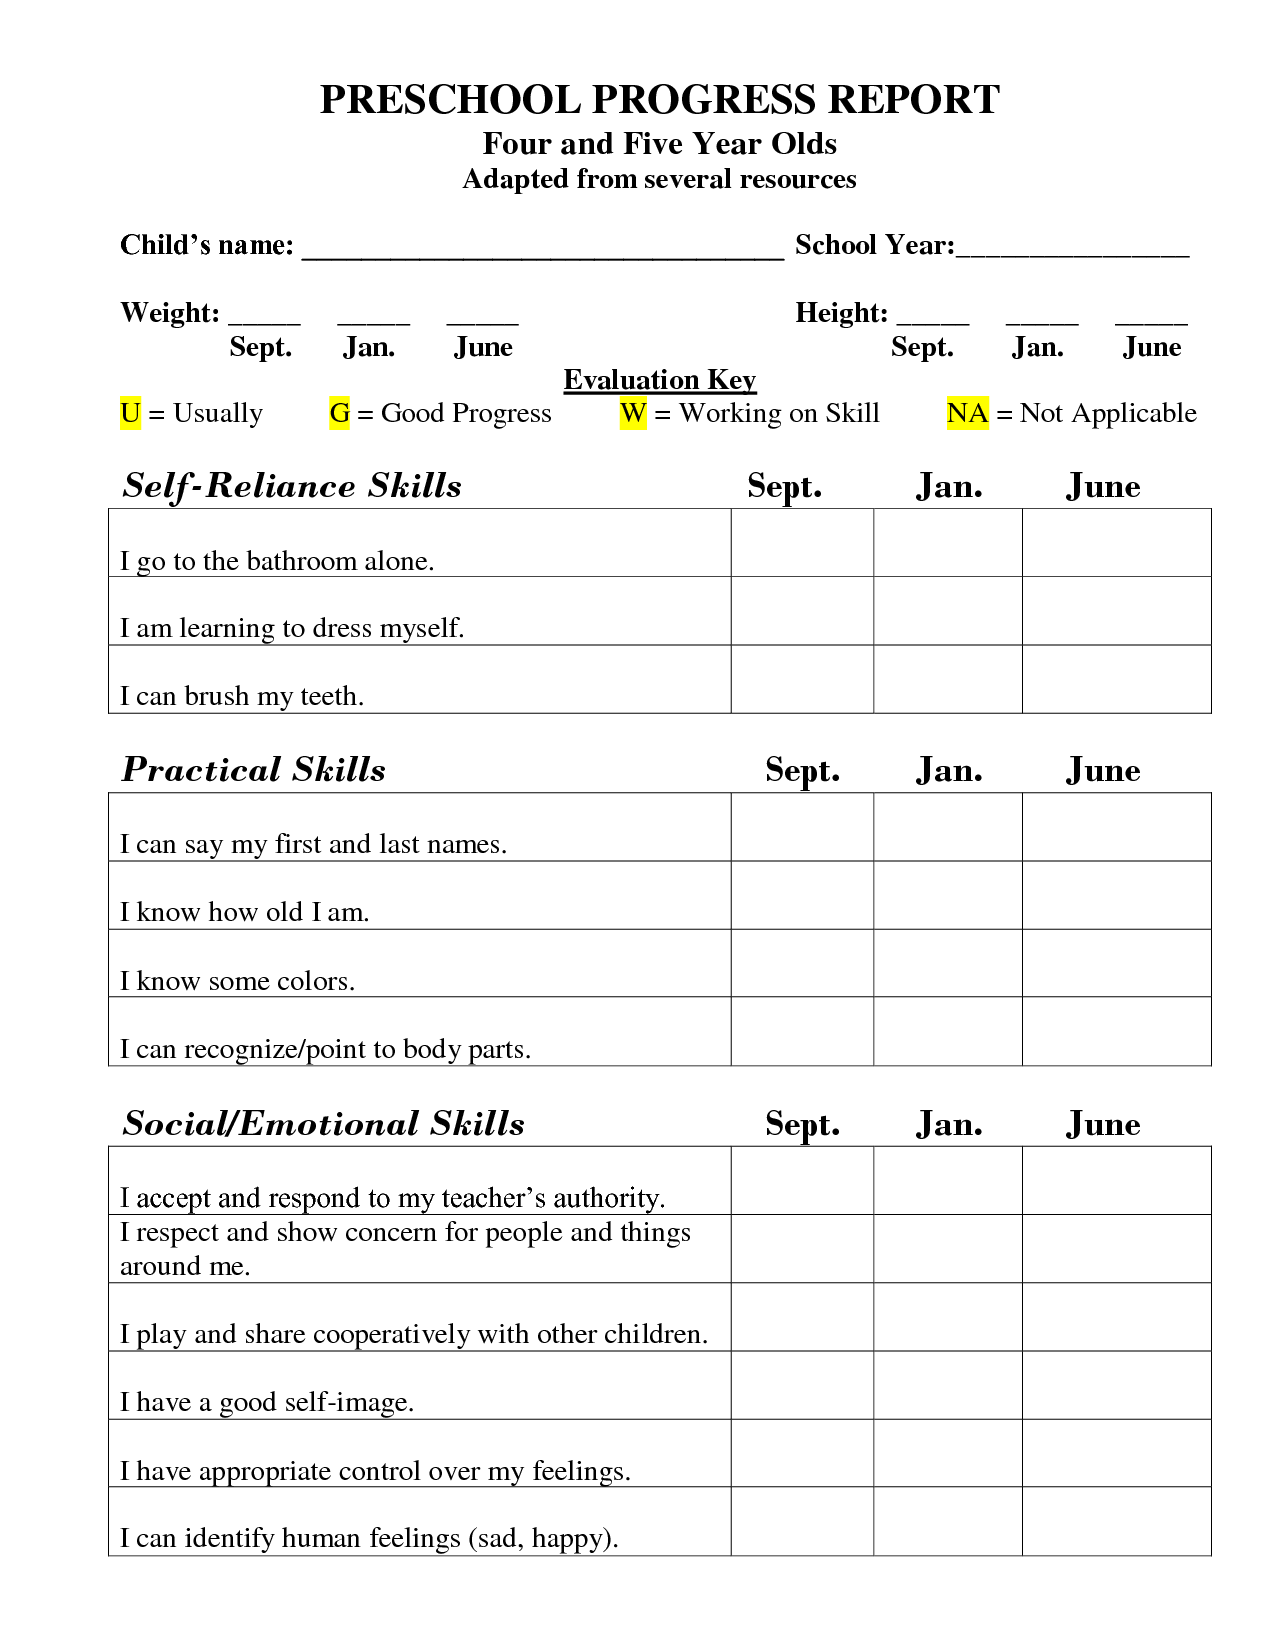 Preschool Progress Report Template Image